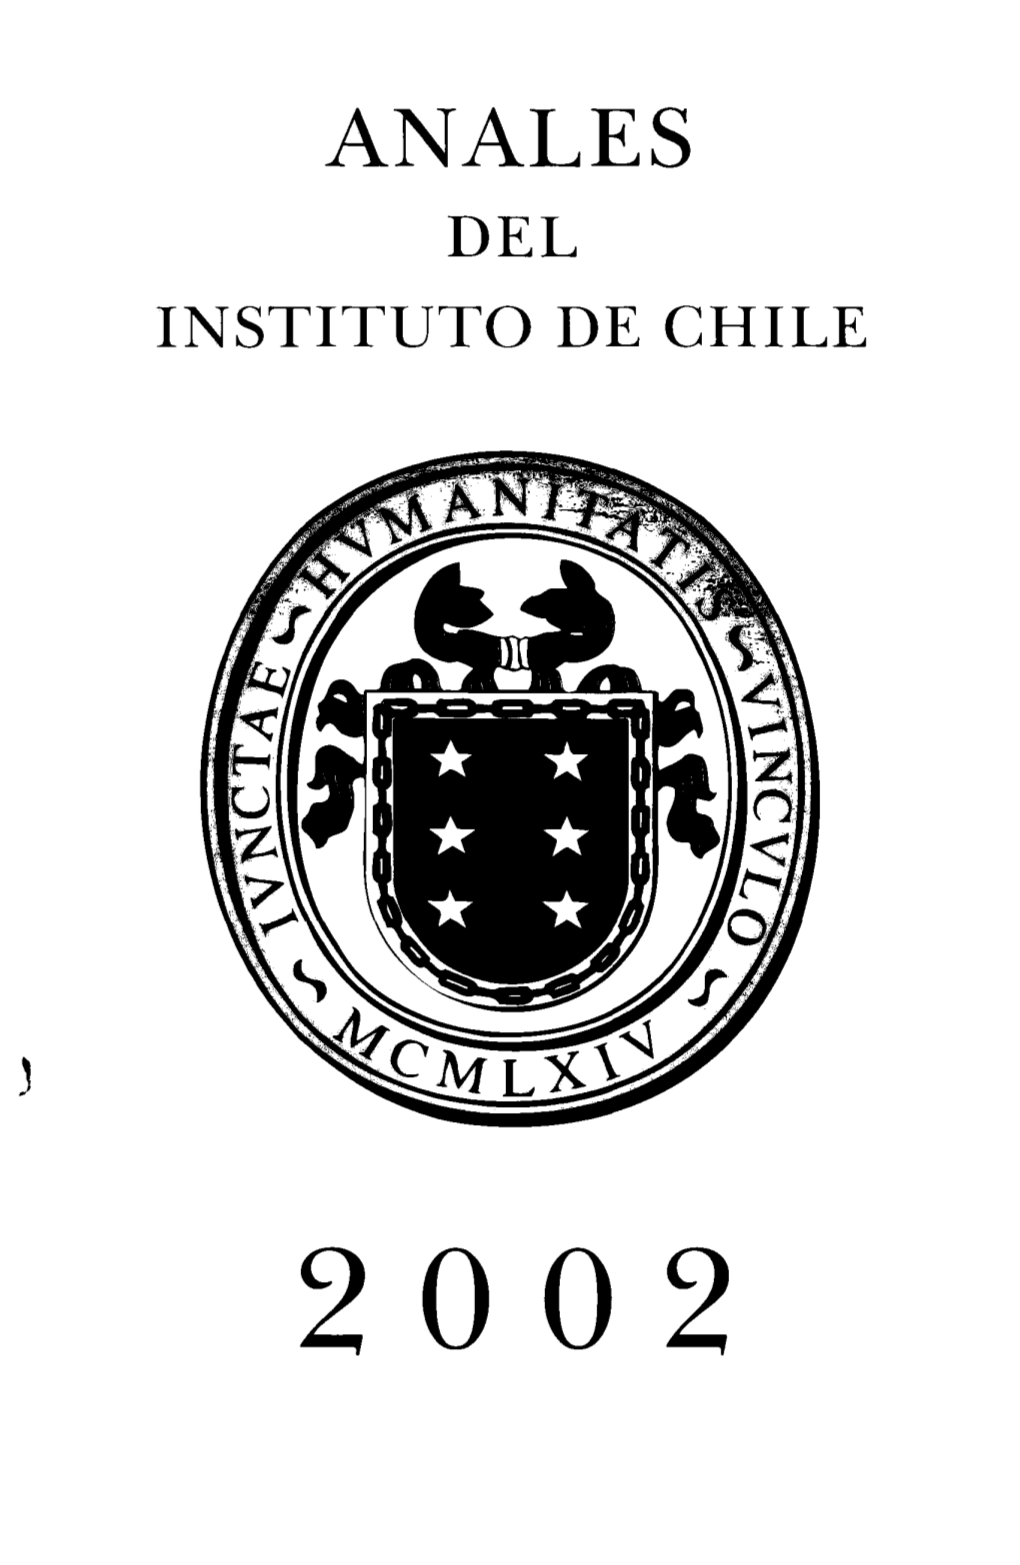 2002 ANALES DEL INSTITUTO DE CHILE 2002 Edición De Quinientos Ejemplares Impreso En Versión Producciones Gráficas Ltda